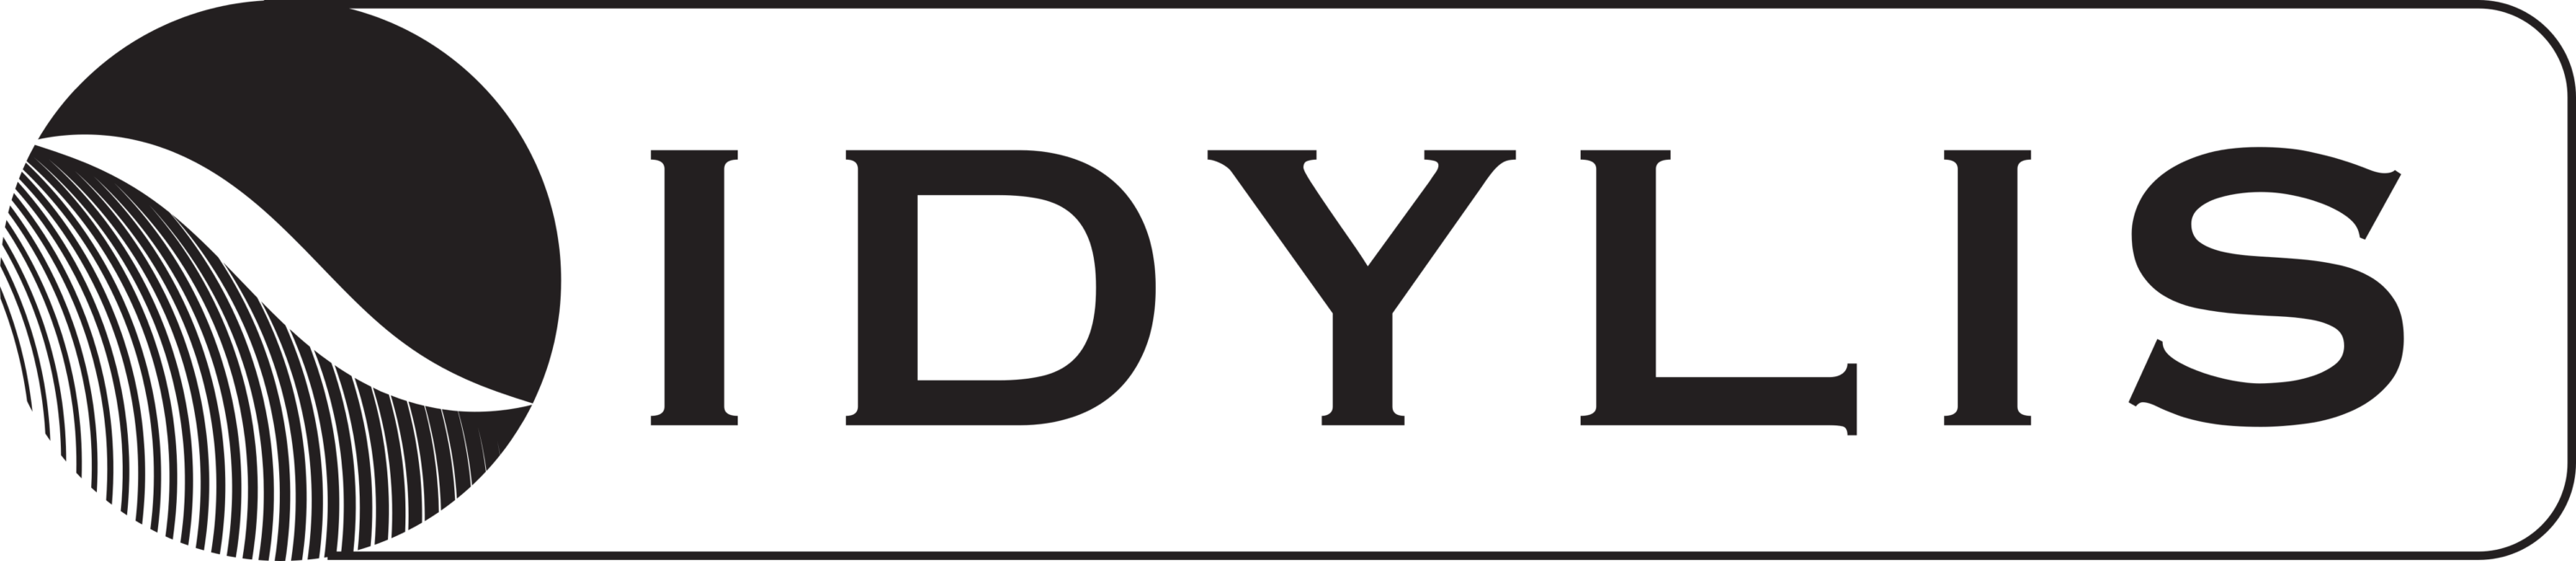 Idylis Logo